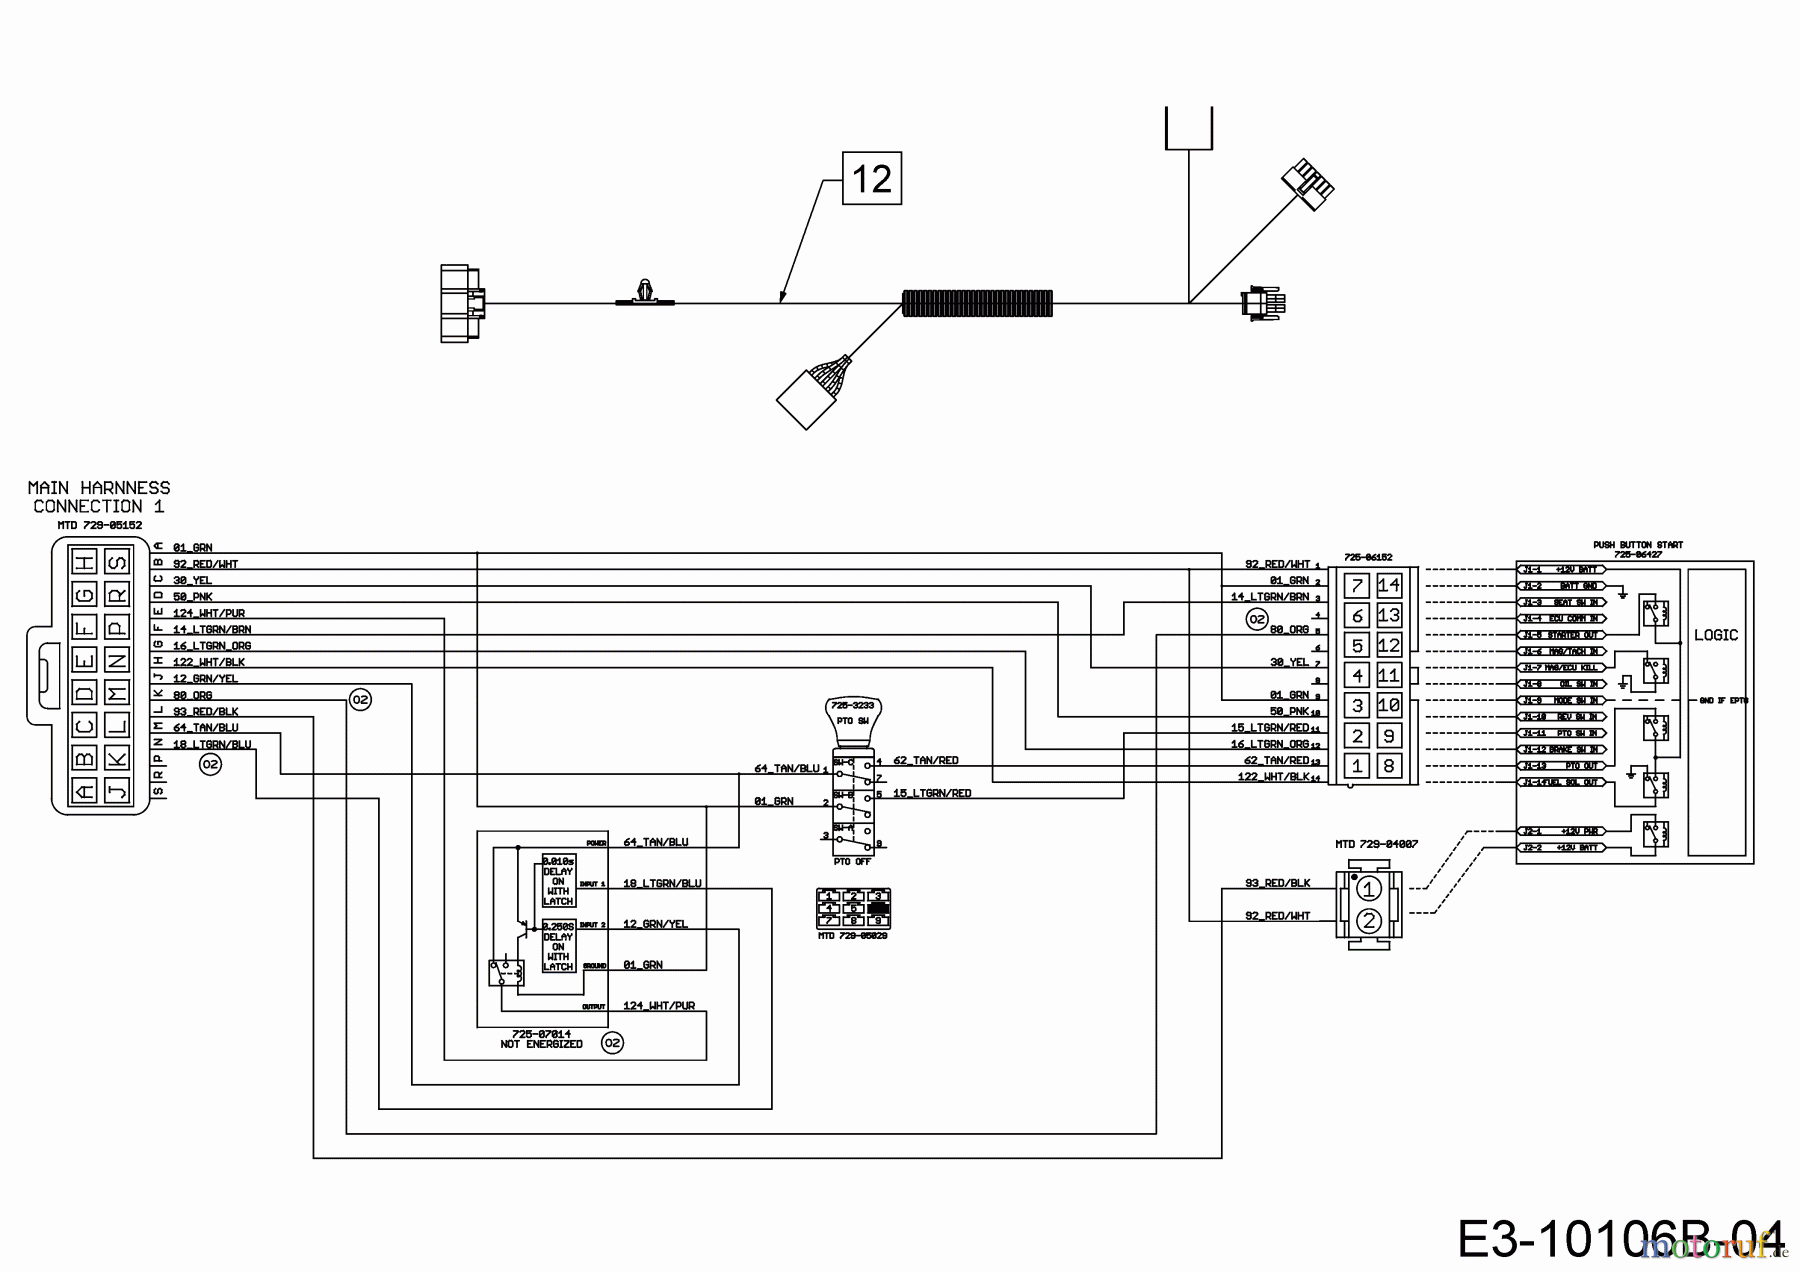  Wolf-Garten Lawn tractors 106.185 H 13BLA1VR650  (2020) Wiring diagram dashboard